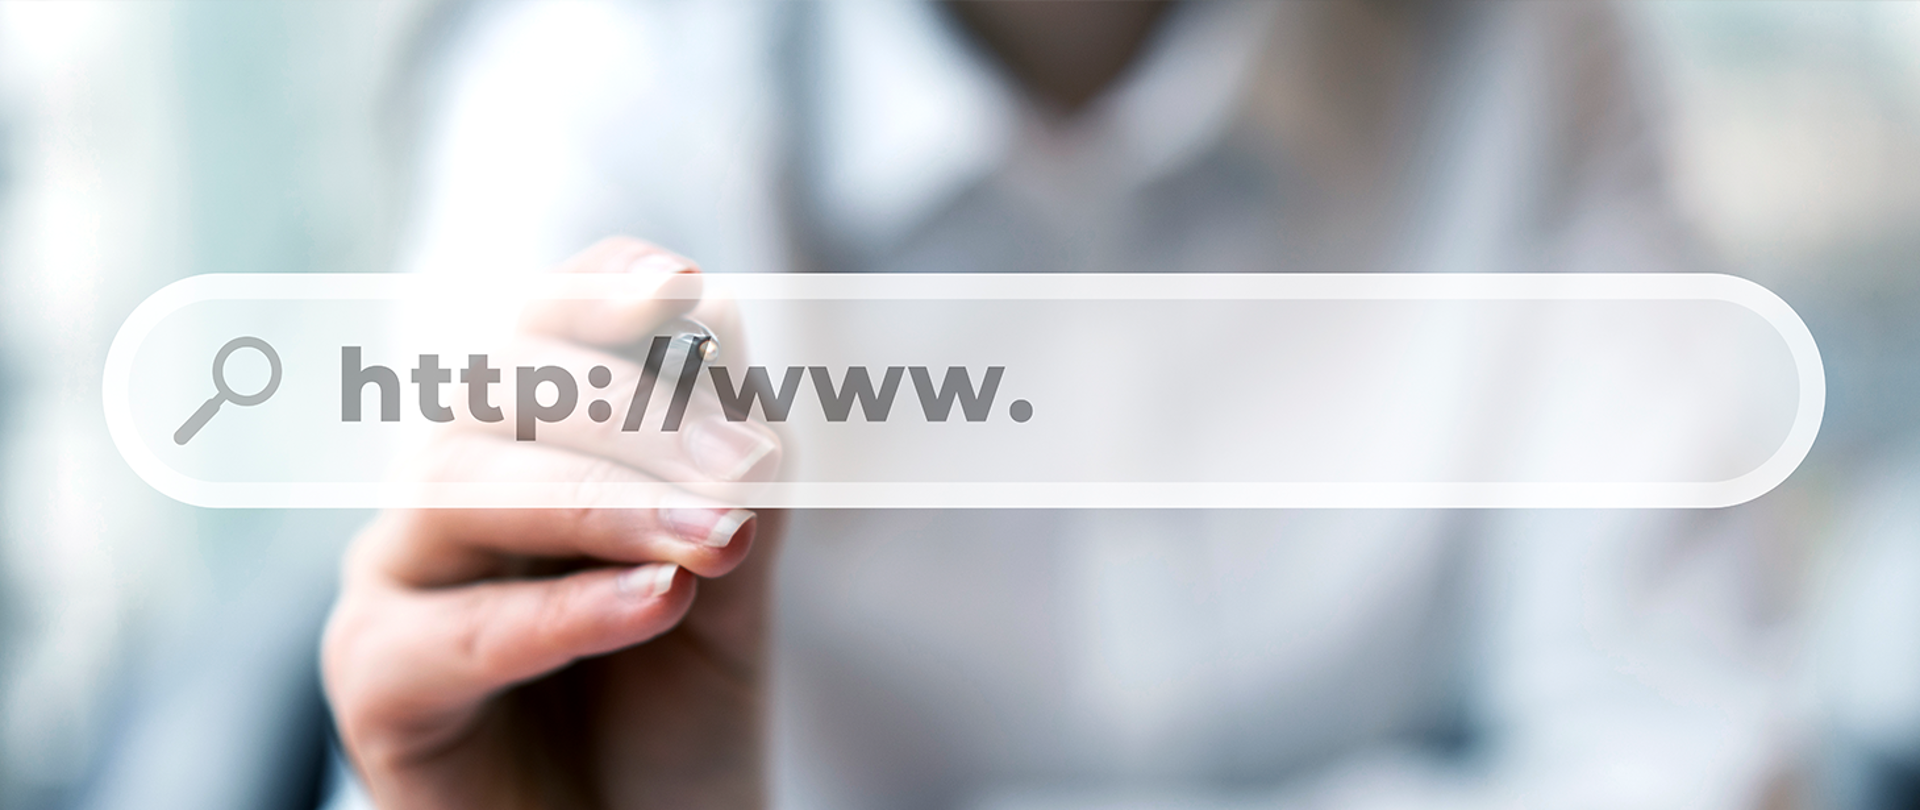 baner przedstawia dłoń z wyciągniętym palcem który wskazuje pole do wpisywania adresu www.